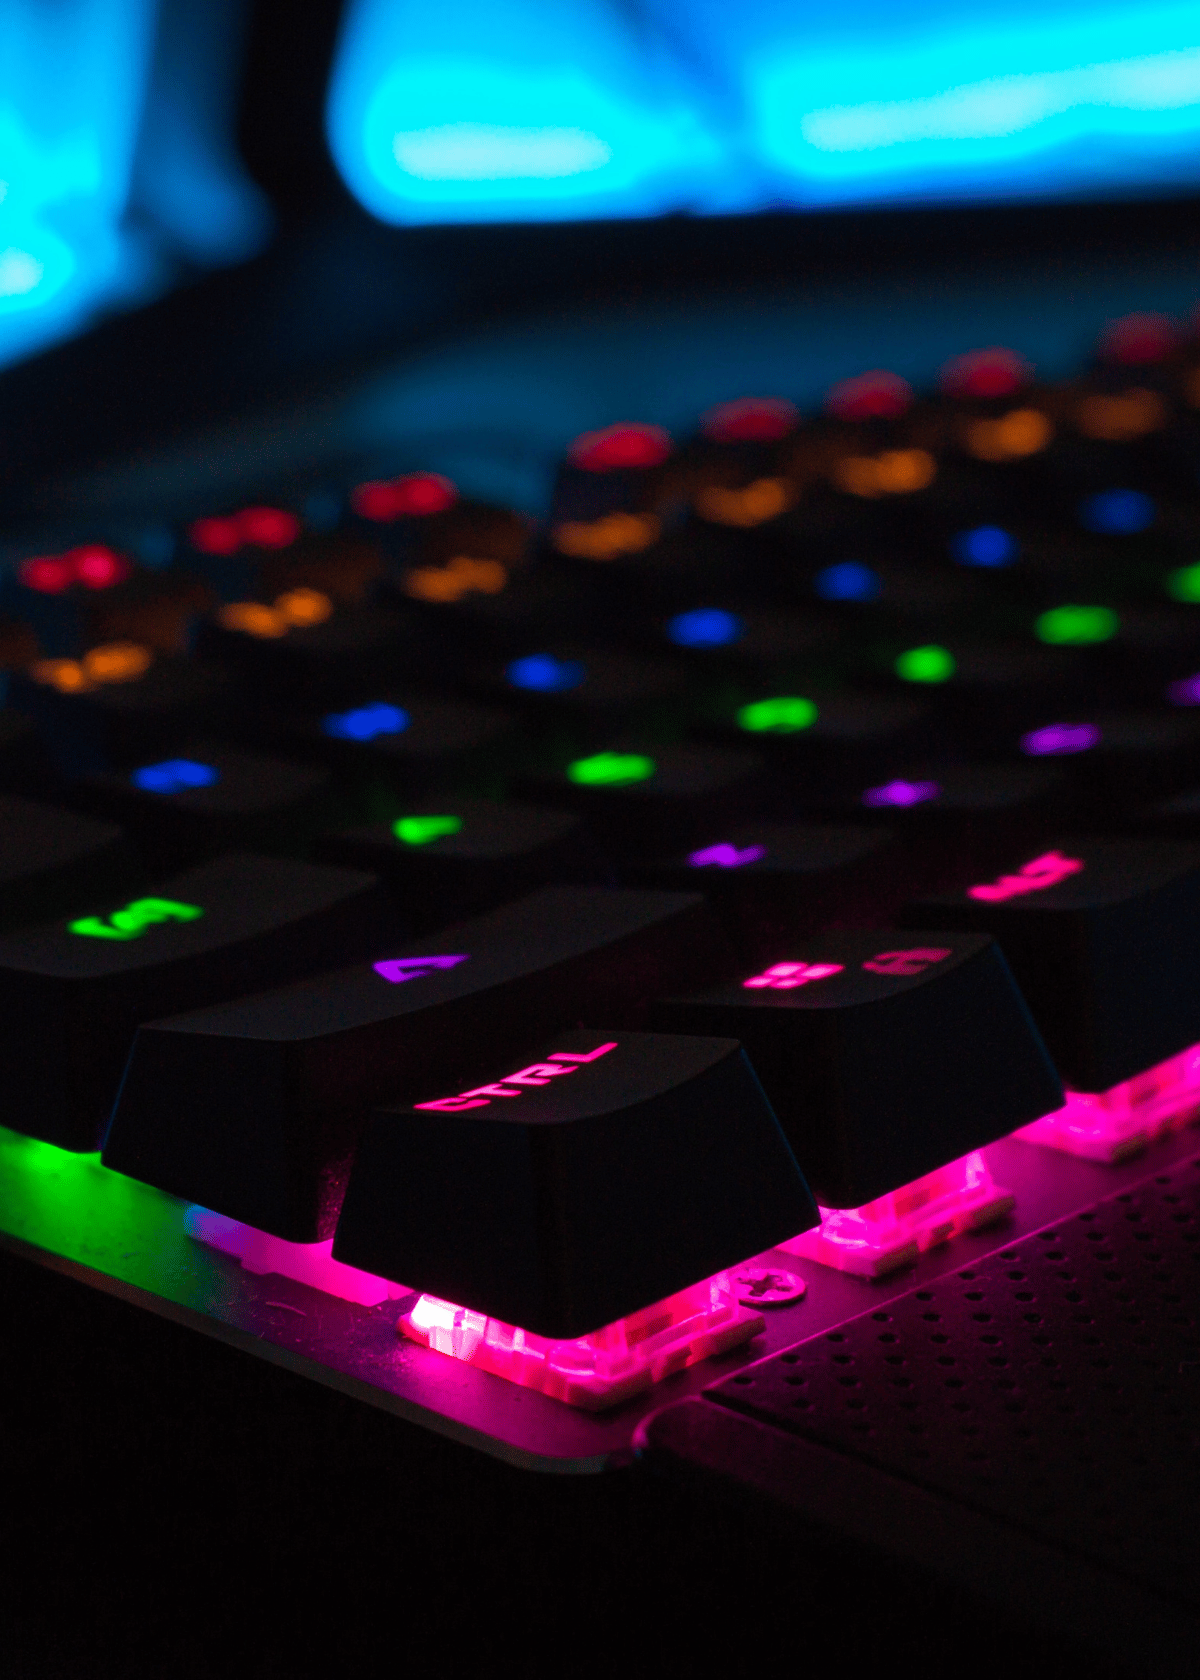 Best Gaming Keyboard Under $100